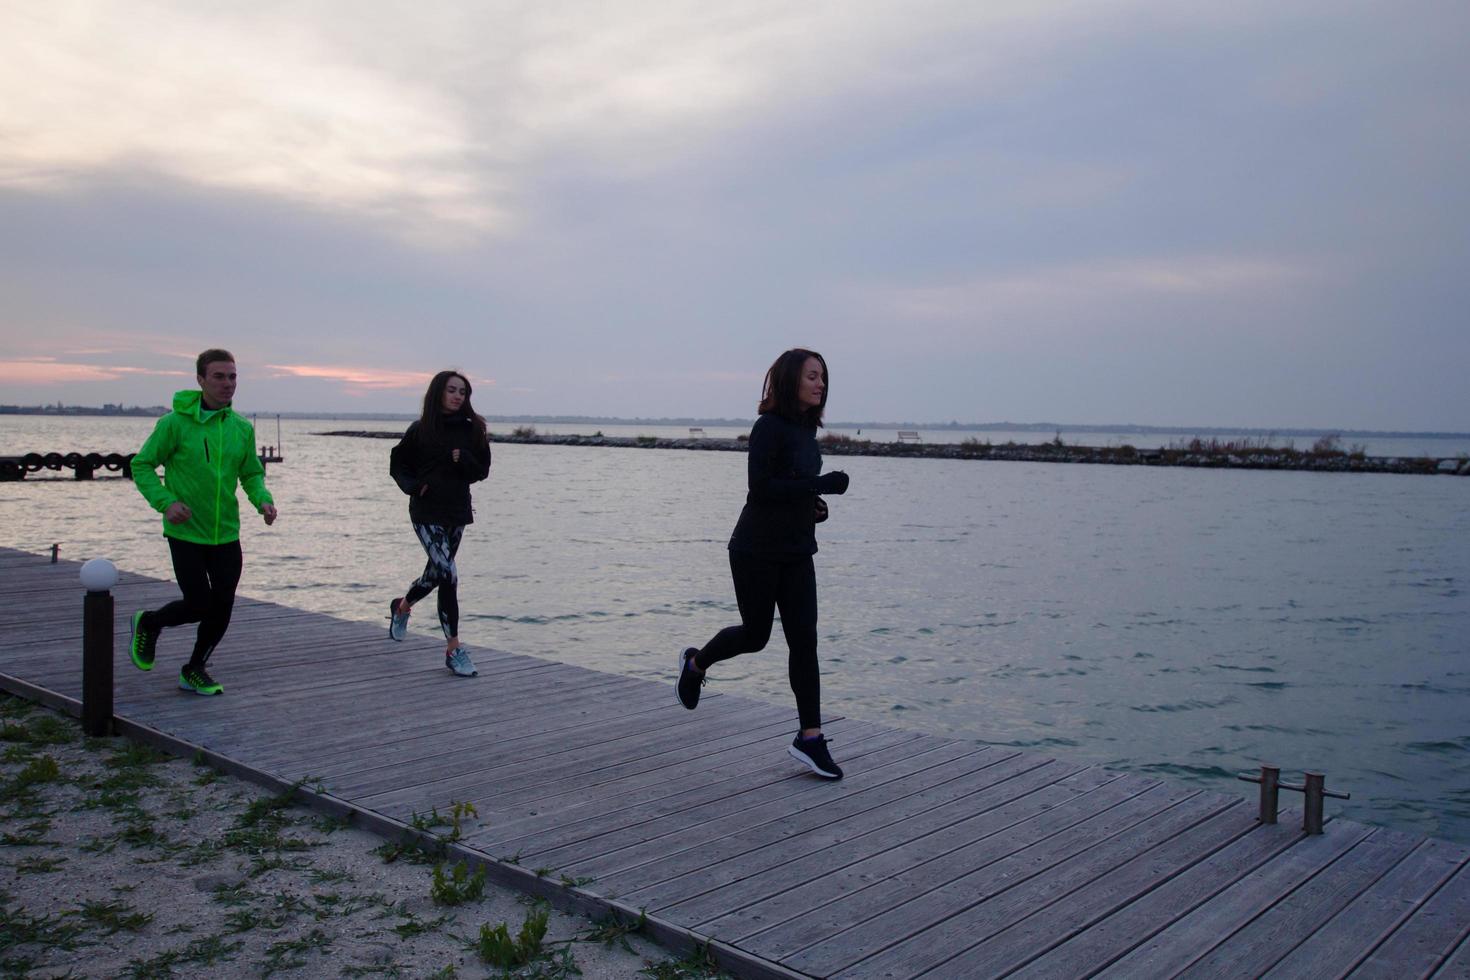 grupo de jóvenes entrenando al aire libre, ejercicios de corredores, fondo marino o fluvial foto